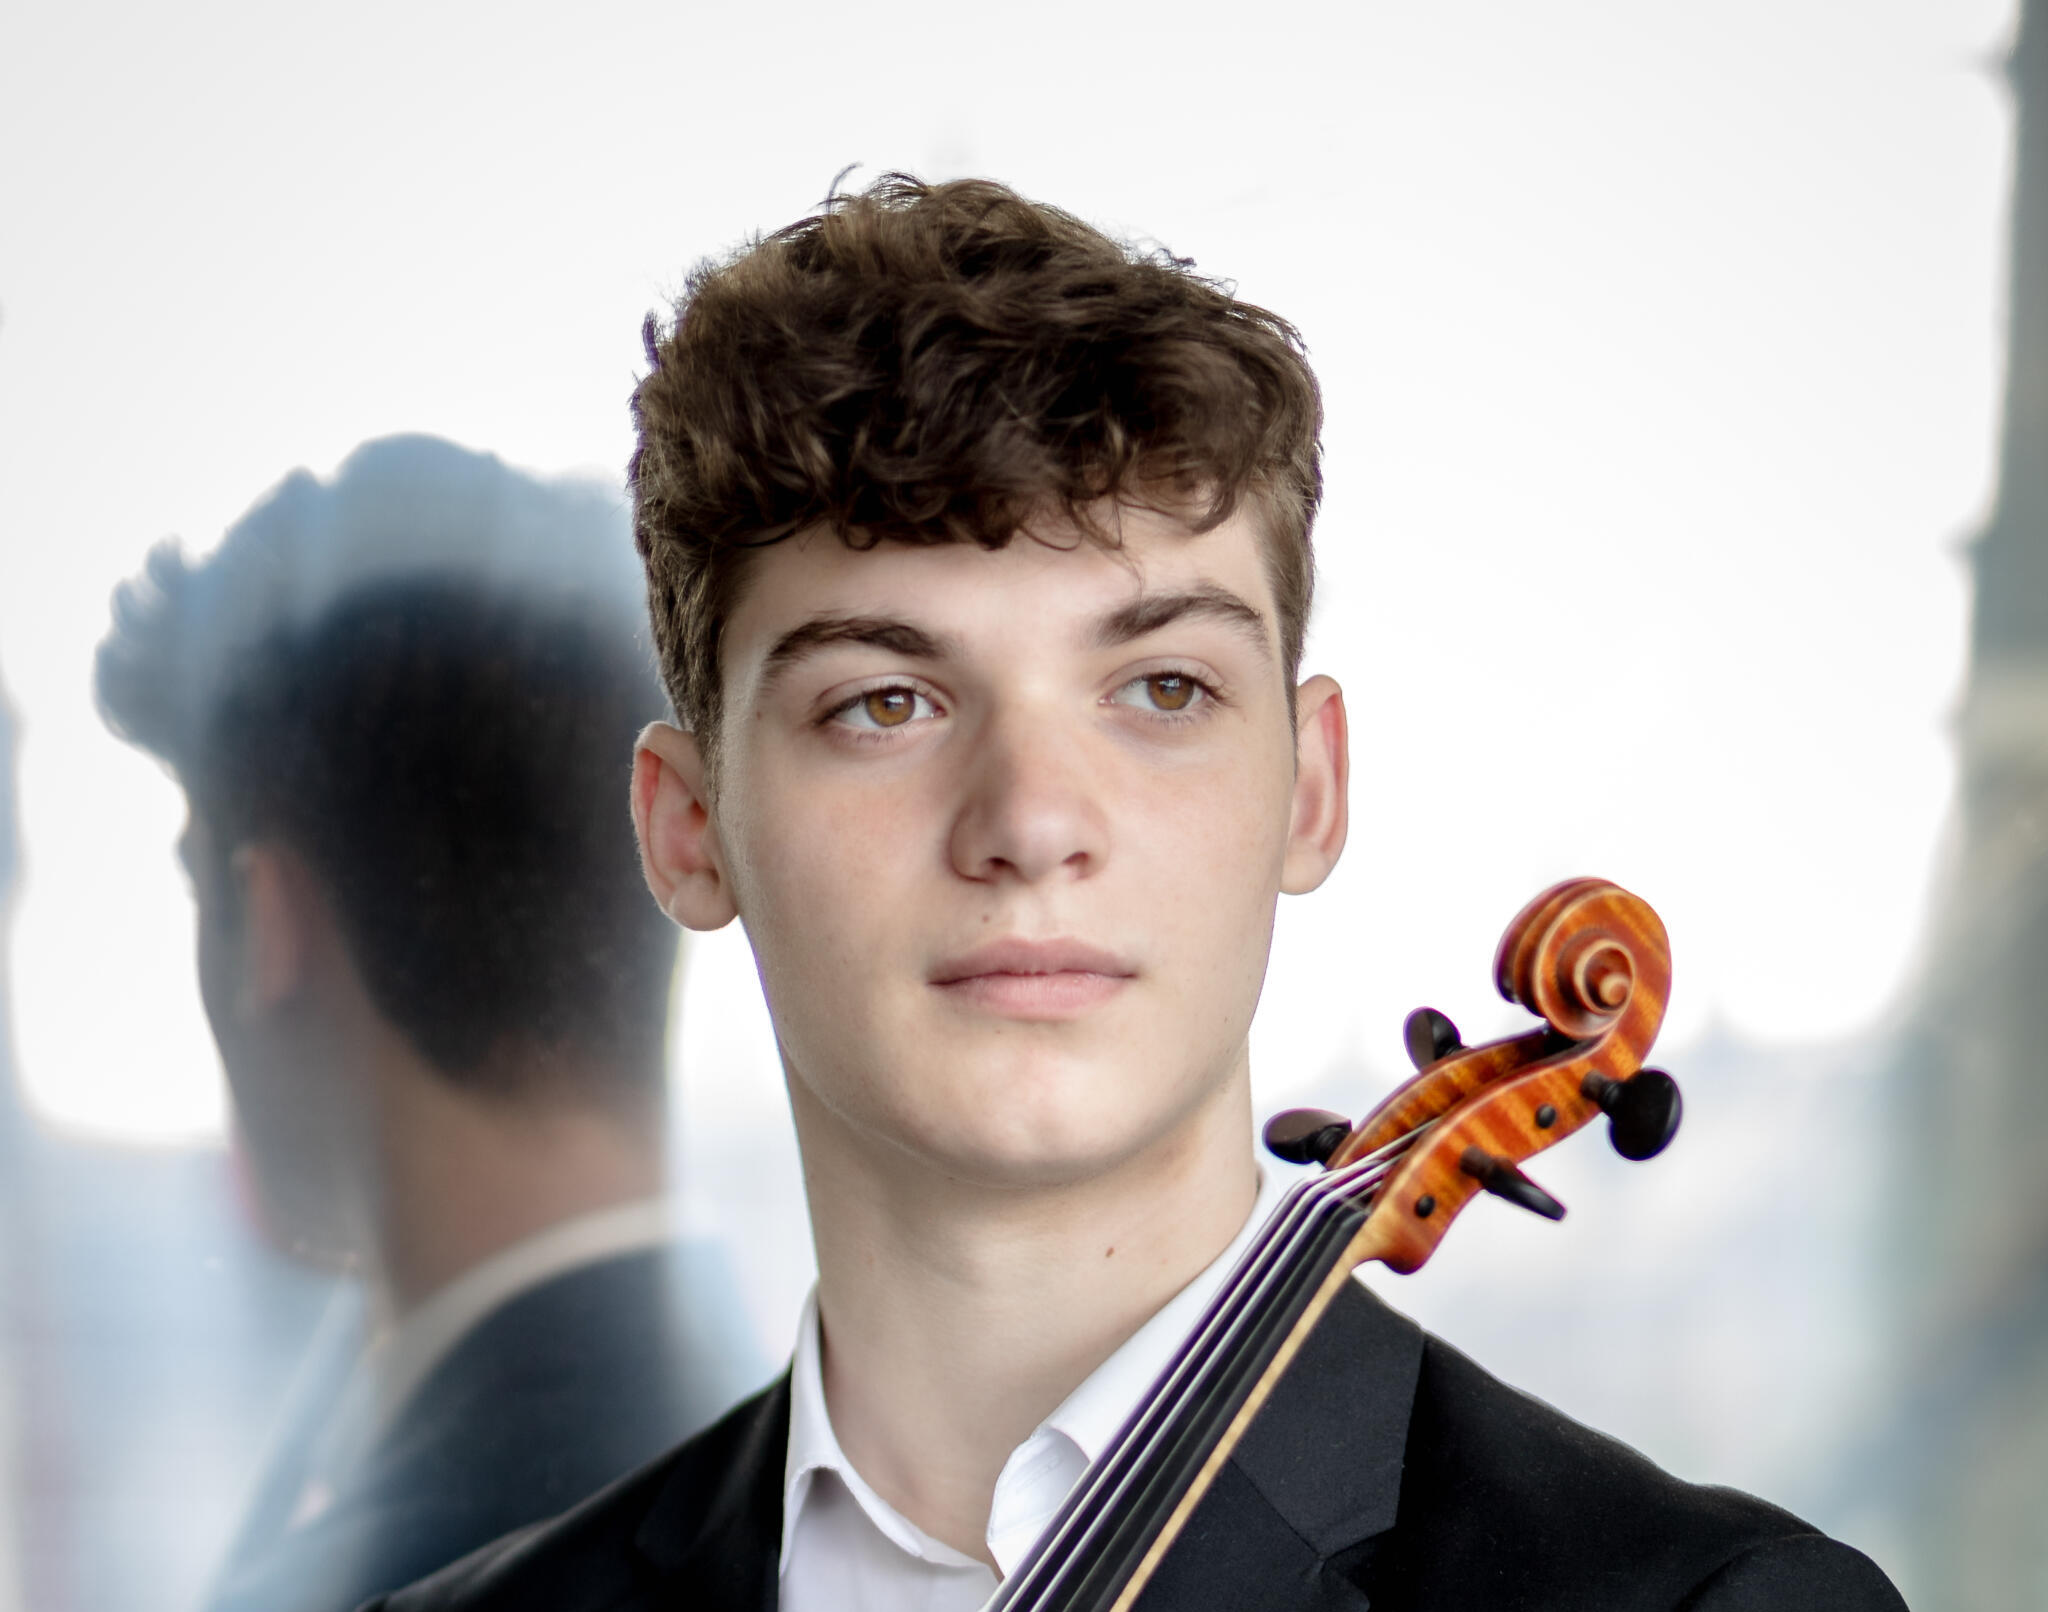 Porträt des Violinisten Andrea Cicalese. Er trägt einen schwarzen Anzug und hält seine Violine in der Hand.